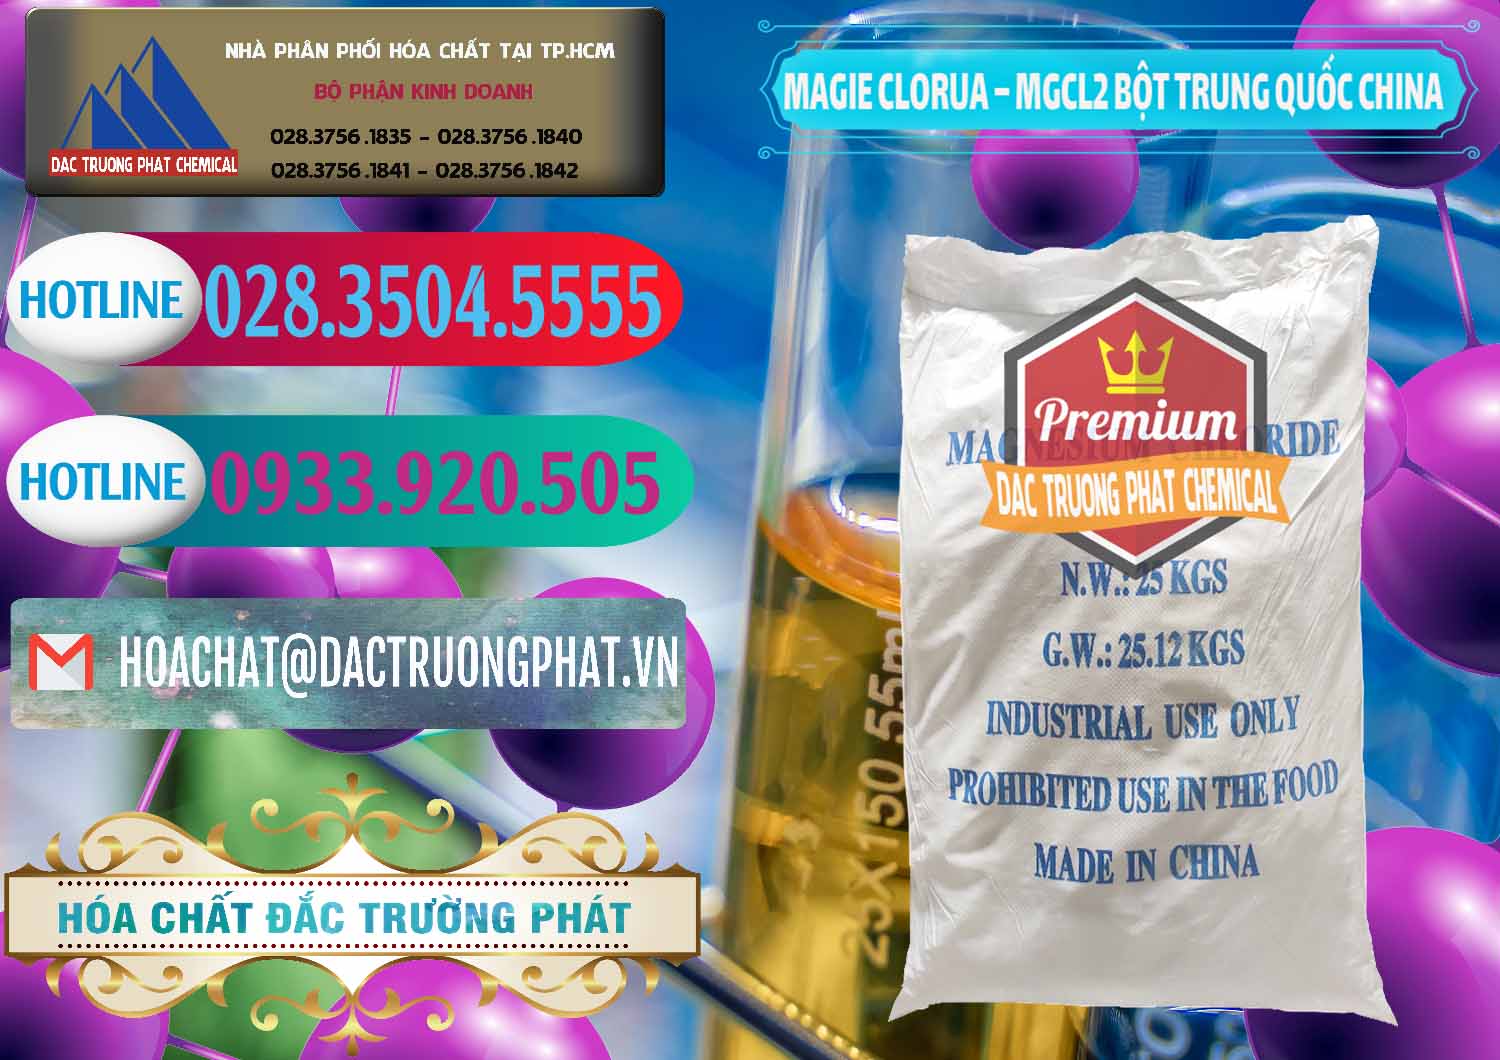 Đơn vị bán - phân phối Magie Clorua – MGCL2 96% Dạng Bột Bao Chữ Xanh Trung Quốc China - 0207 - Nơi chuyên cung cấp - bán hóa chất tại TP.HCM - truongphat.vn